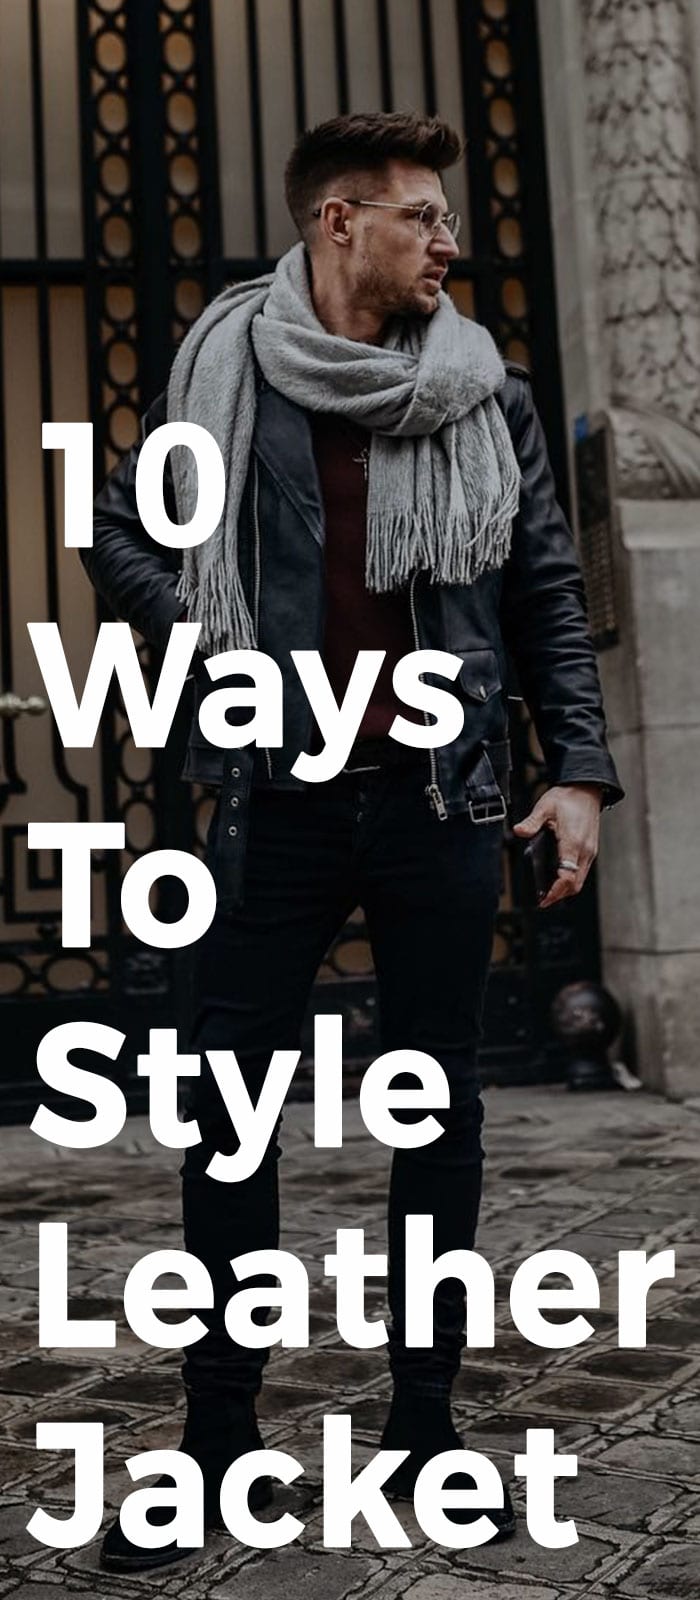 10 Ways To Style Leather Jacket